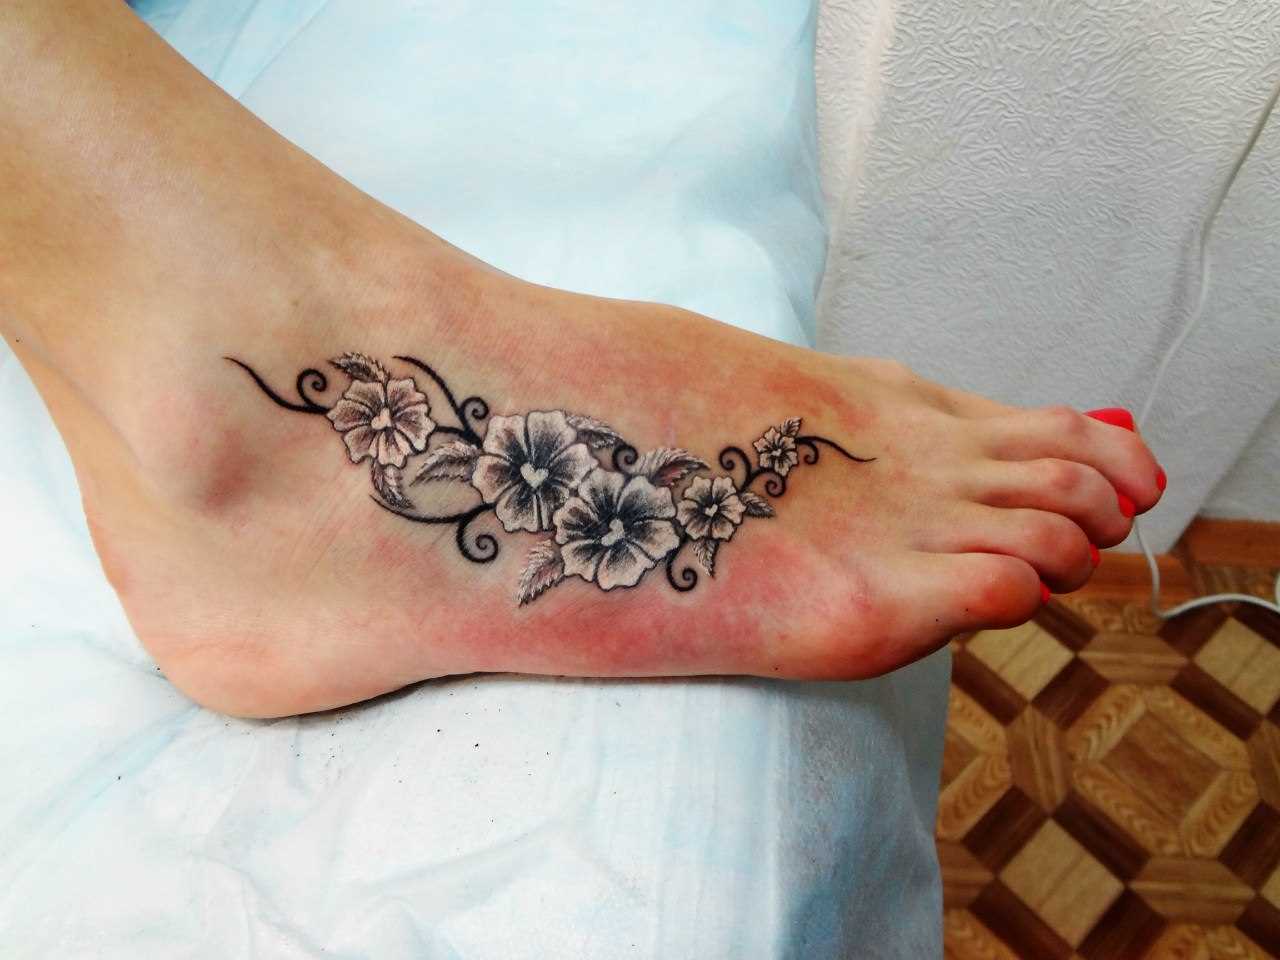 A tatuagem no pé da menina - cores